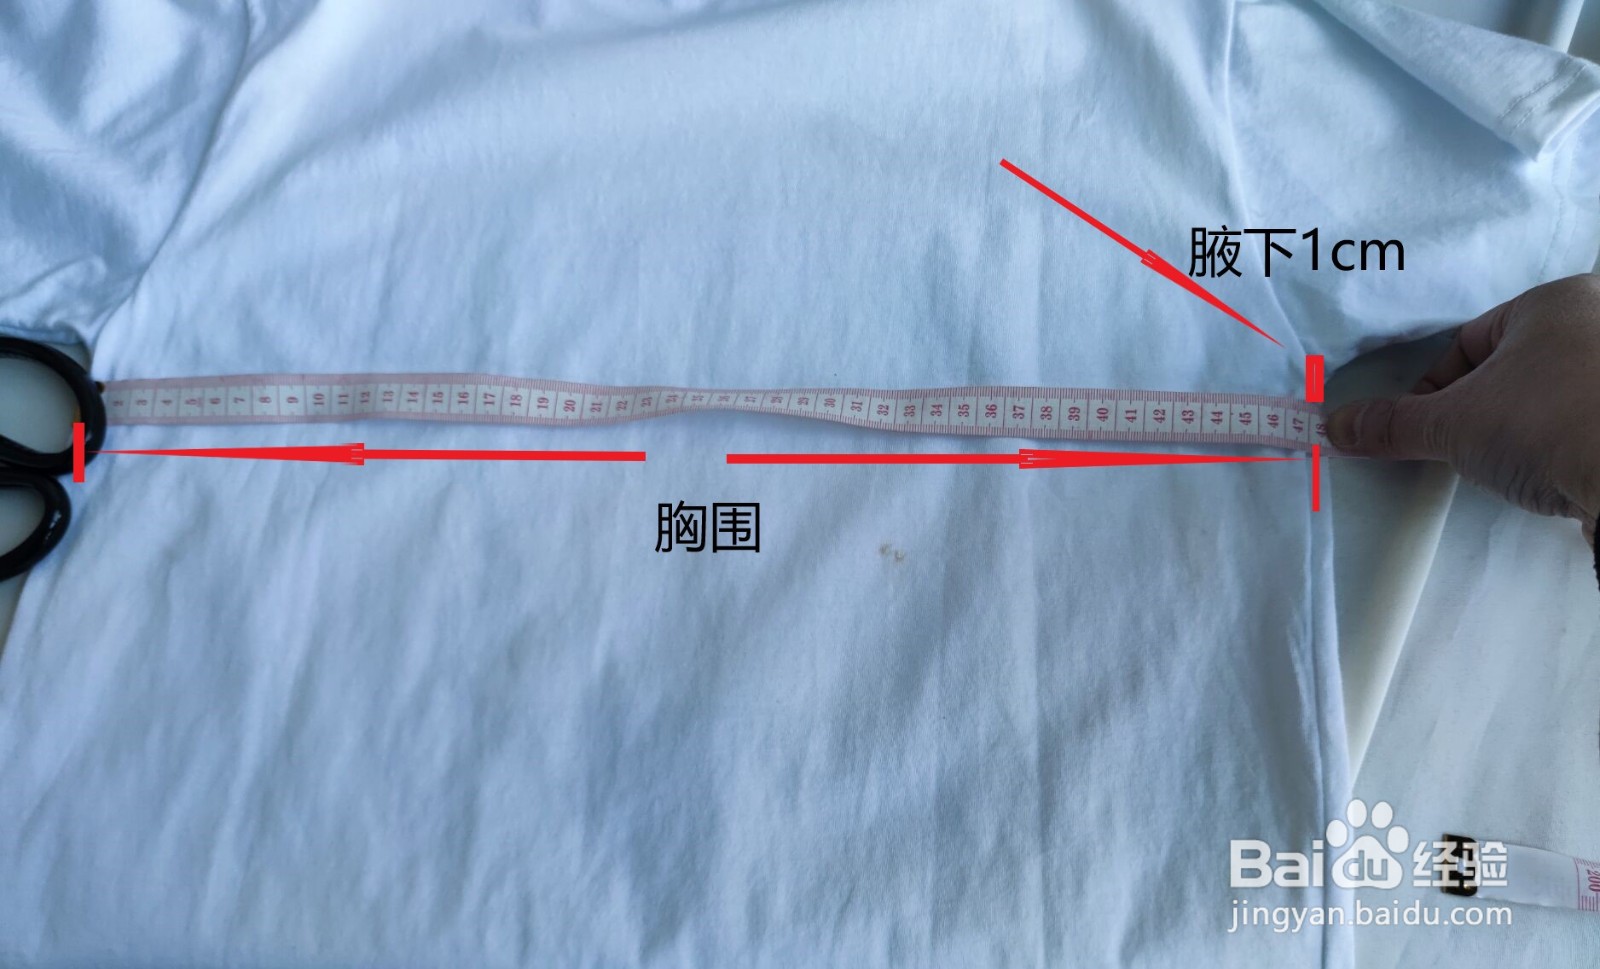 服装尺寸的正确测量方式,怎么样测量上衣尺寸?